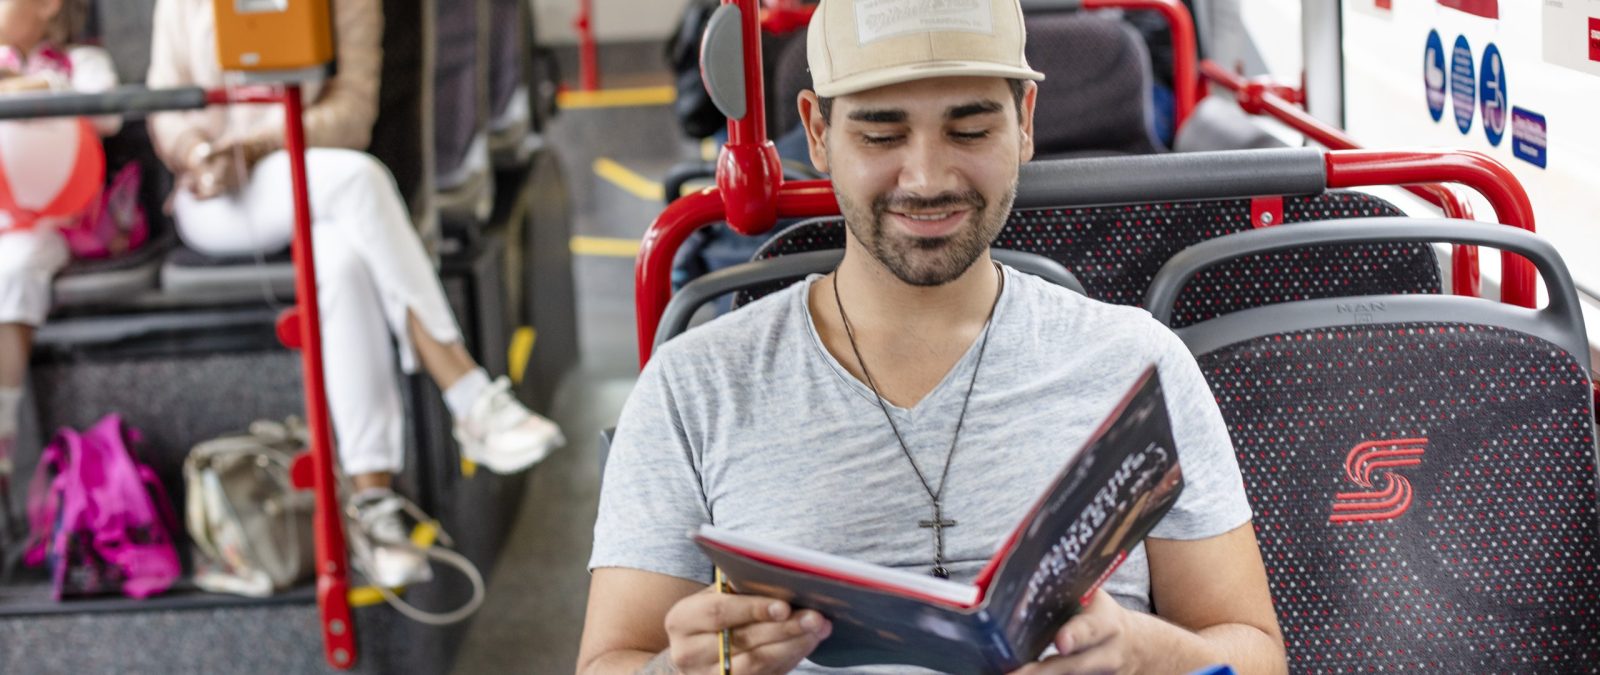 Junger Mann mit Baseball-Cap sitzt im Bus und hält ein Buch in der Hand